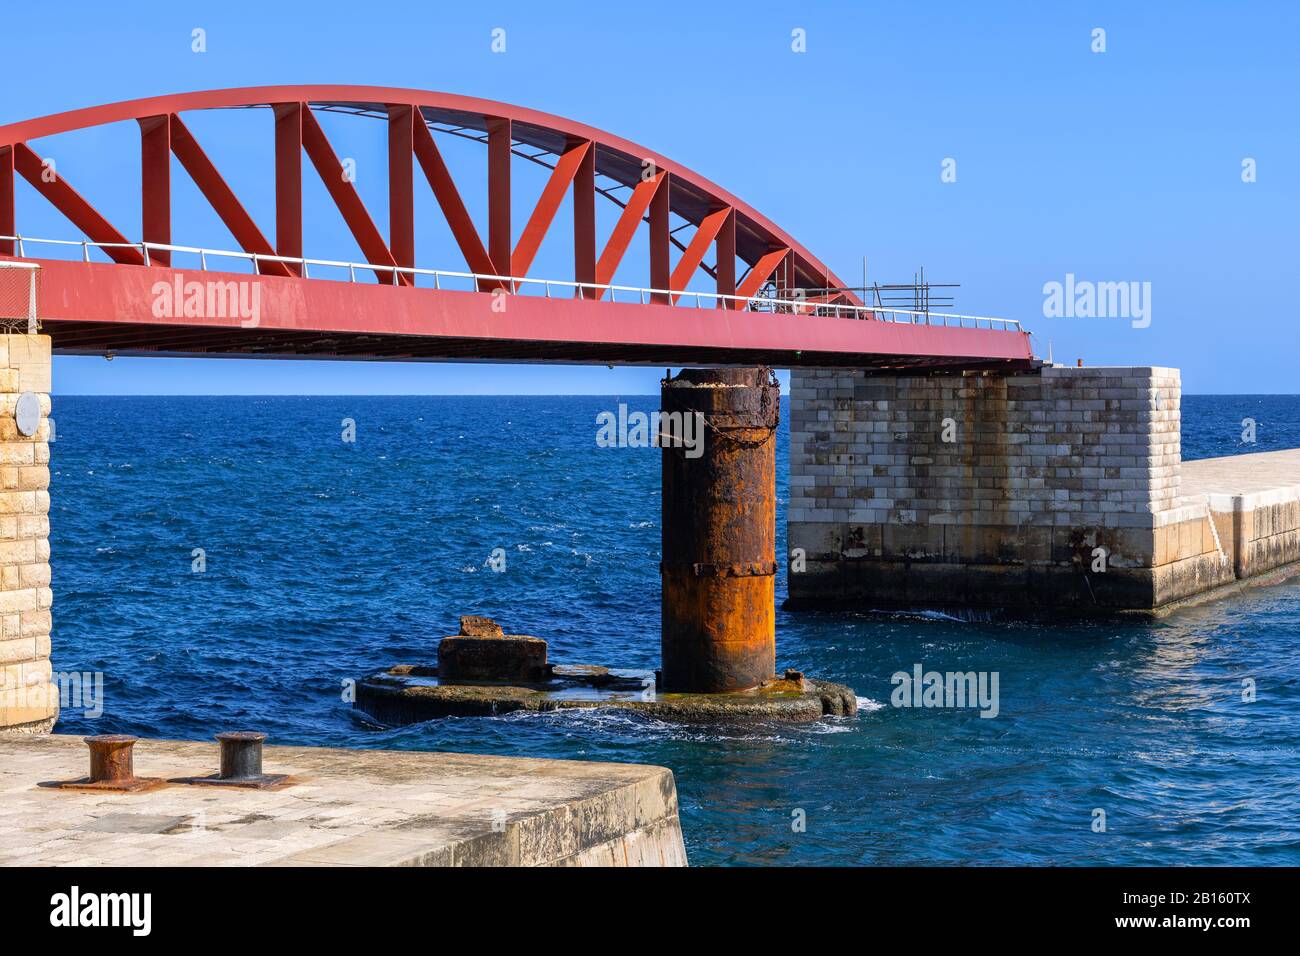 Il ponte di St Elmo o il ponte di Breakwater, ponte a traliccio ad arco a campata singola in acciaio a Valletta, Malta Foto Stock